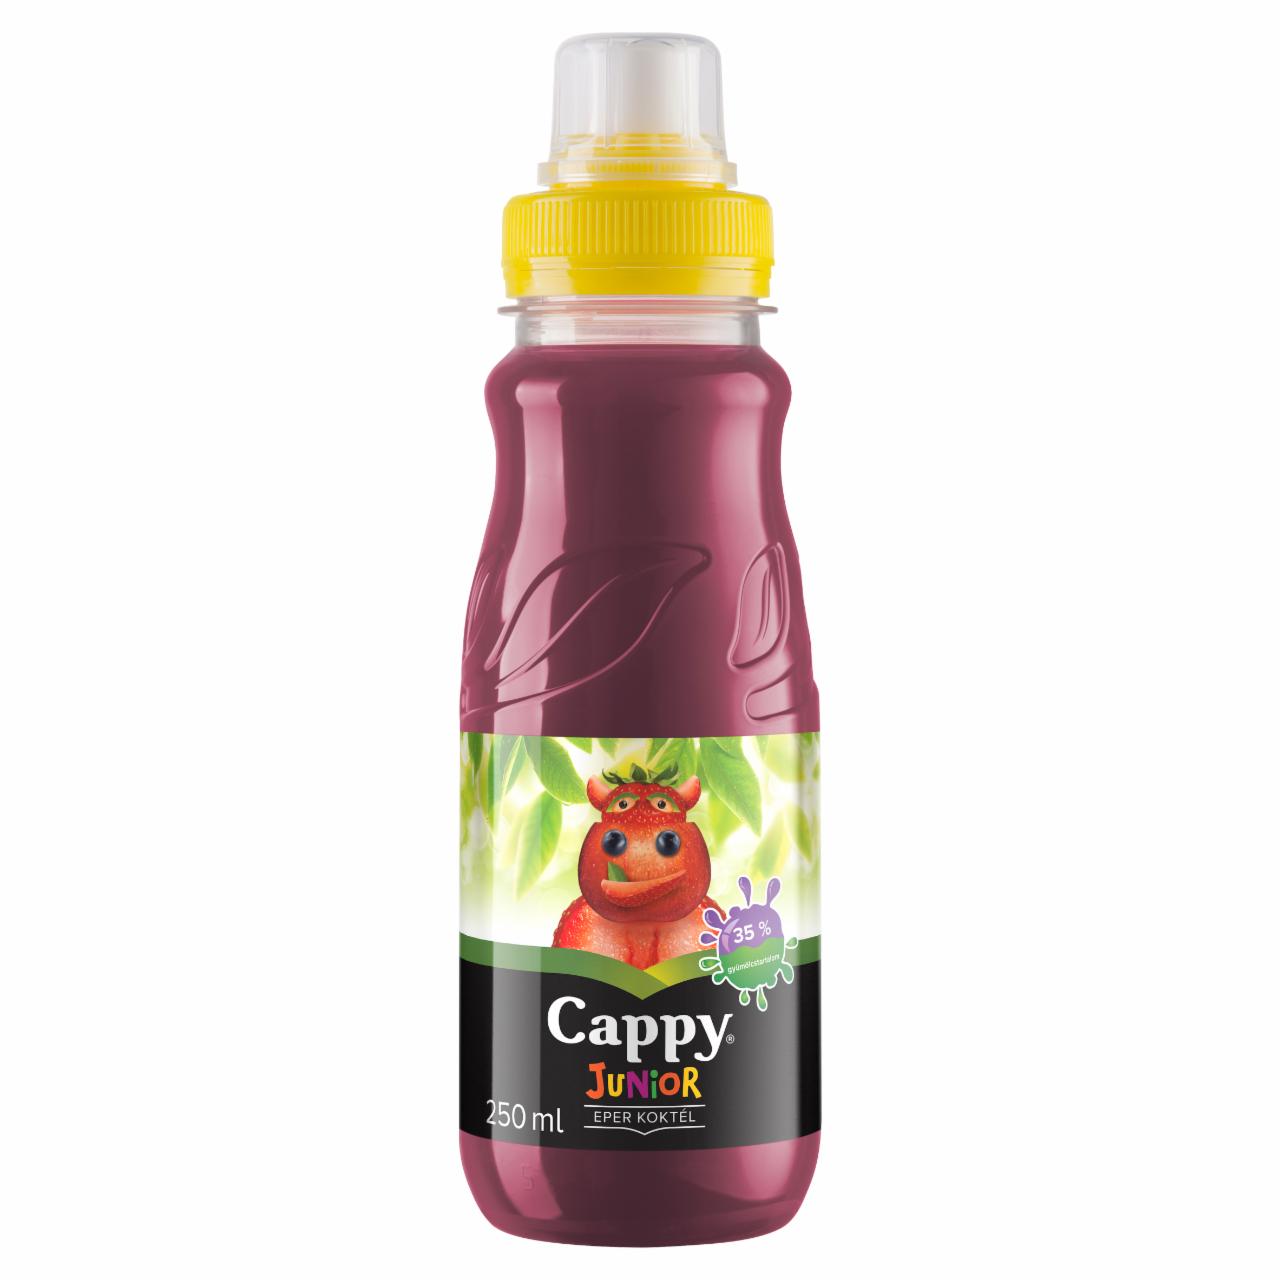 Képek - Cappy Junior eper koktél 250 ml